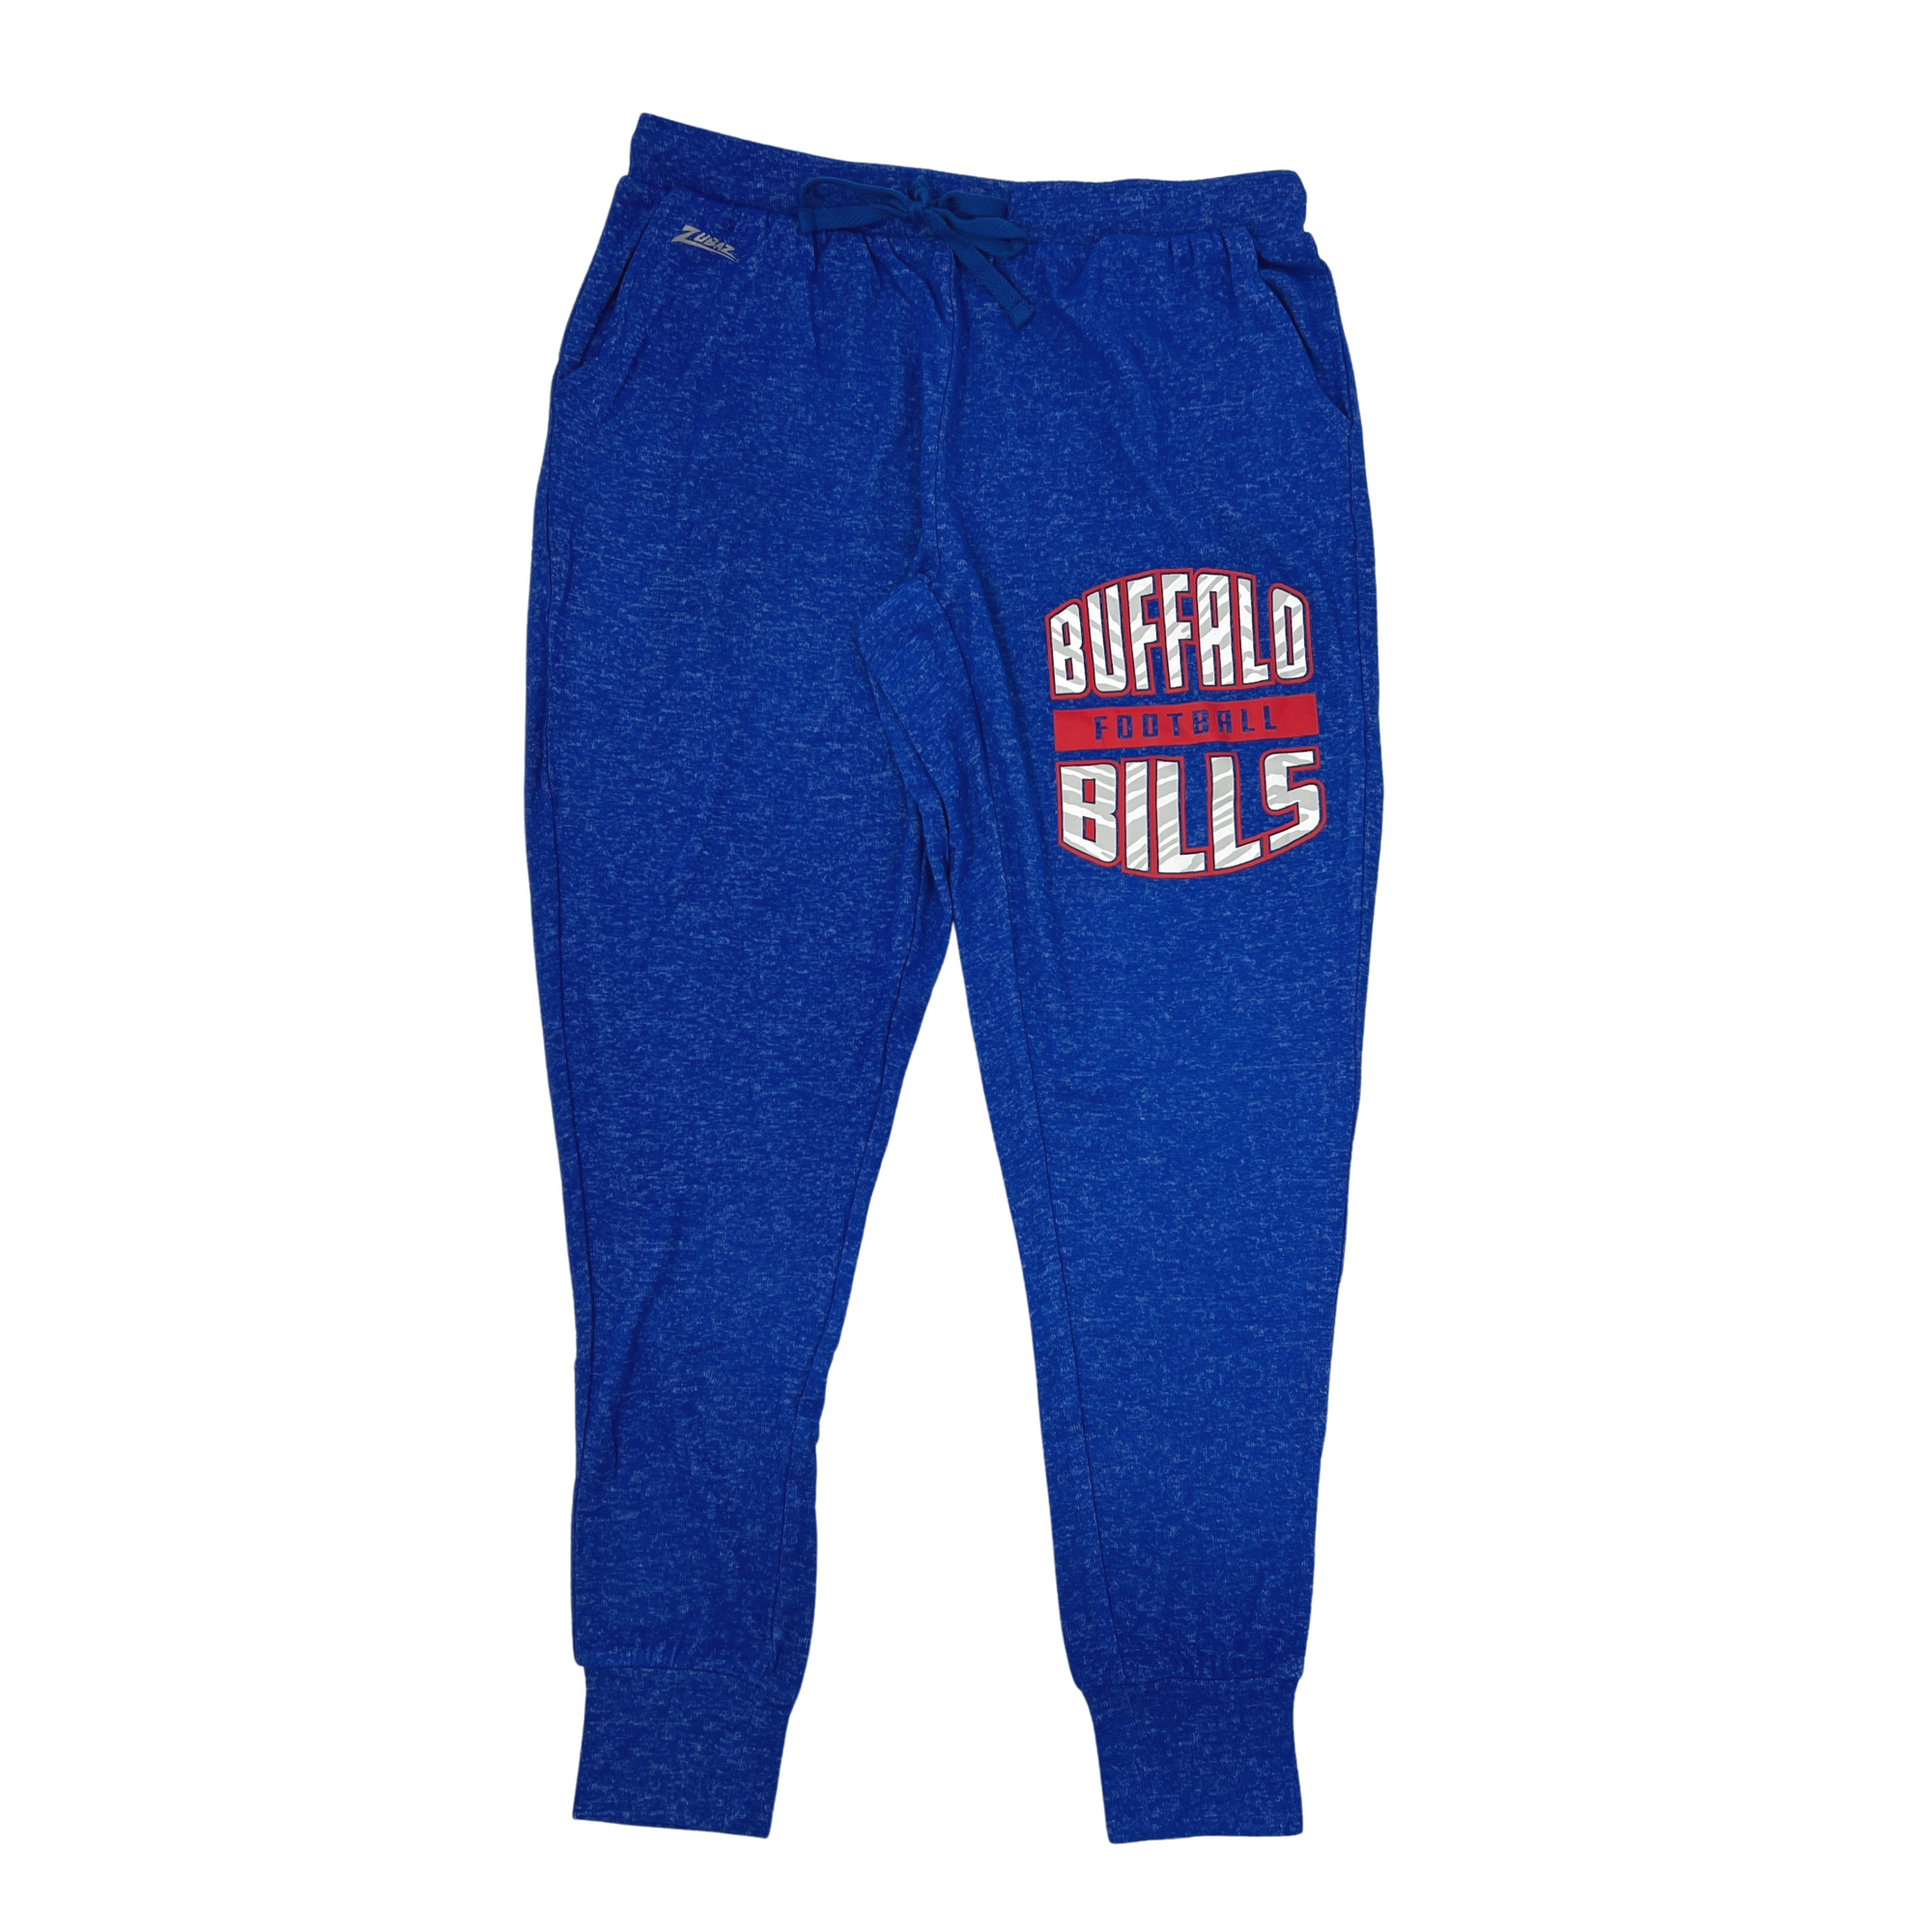 Women's Buffalo Bills Pants & Shorts